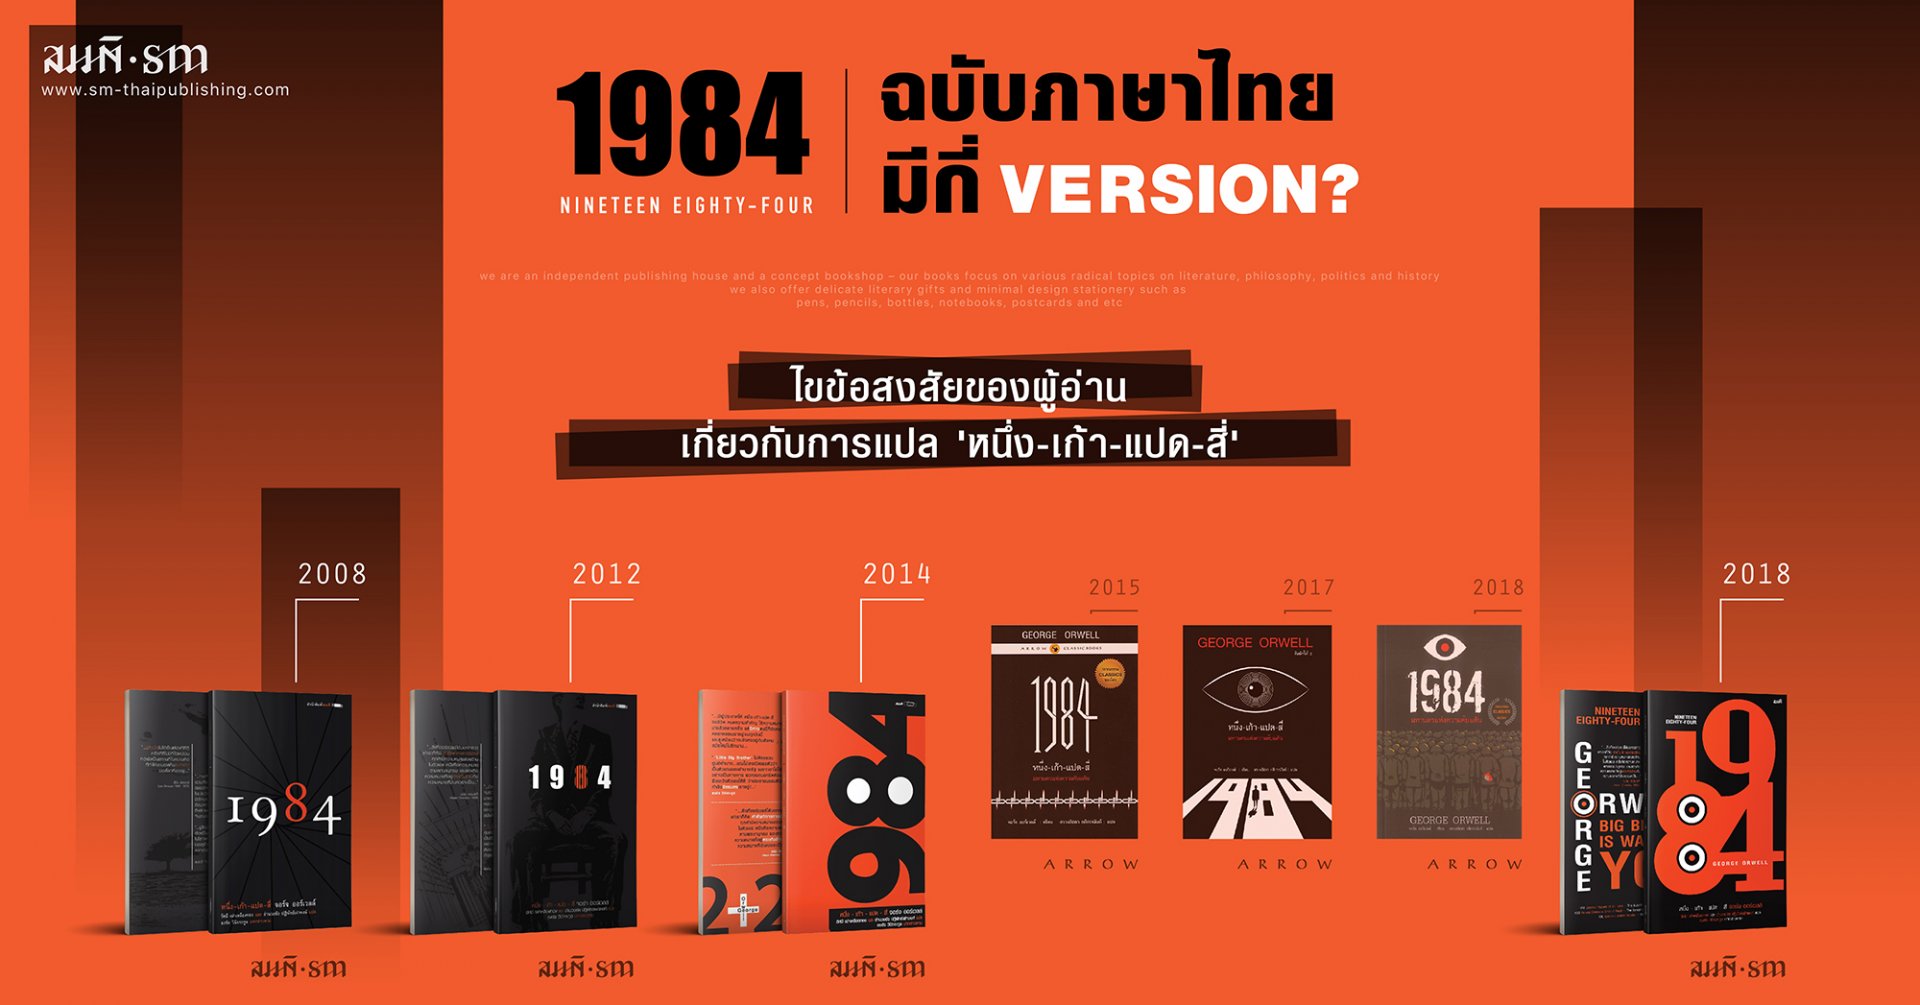 1984 ฉบับภาษาไทย มีกี่ Version